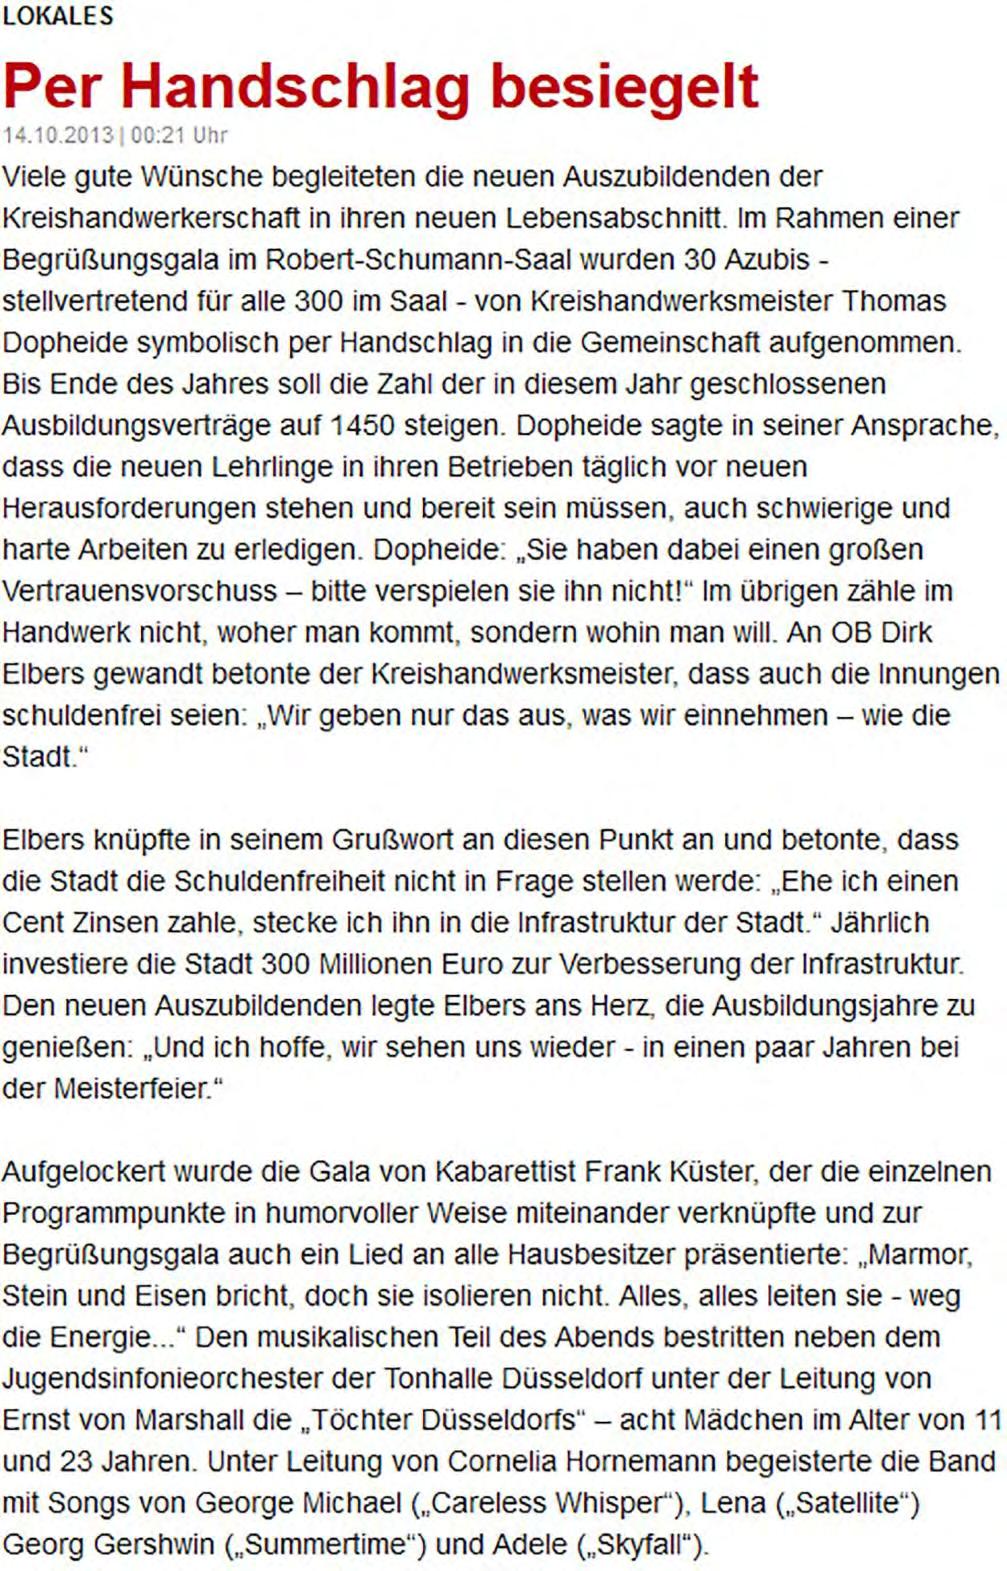 Westdeutsche Allgemeine